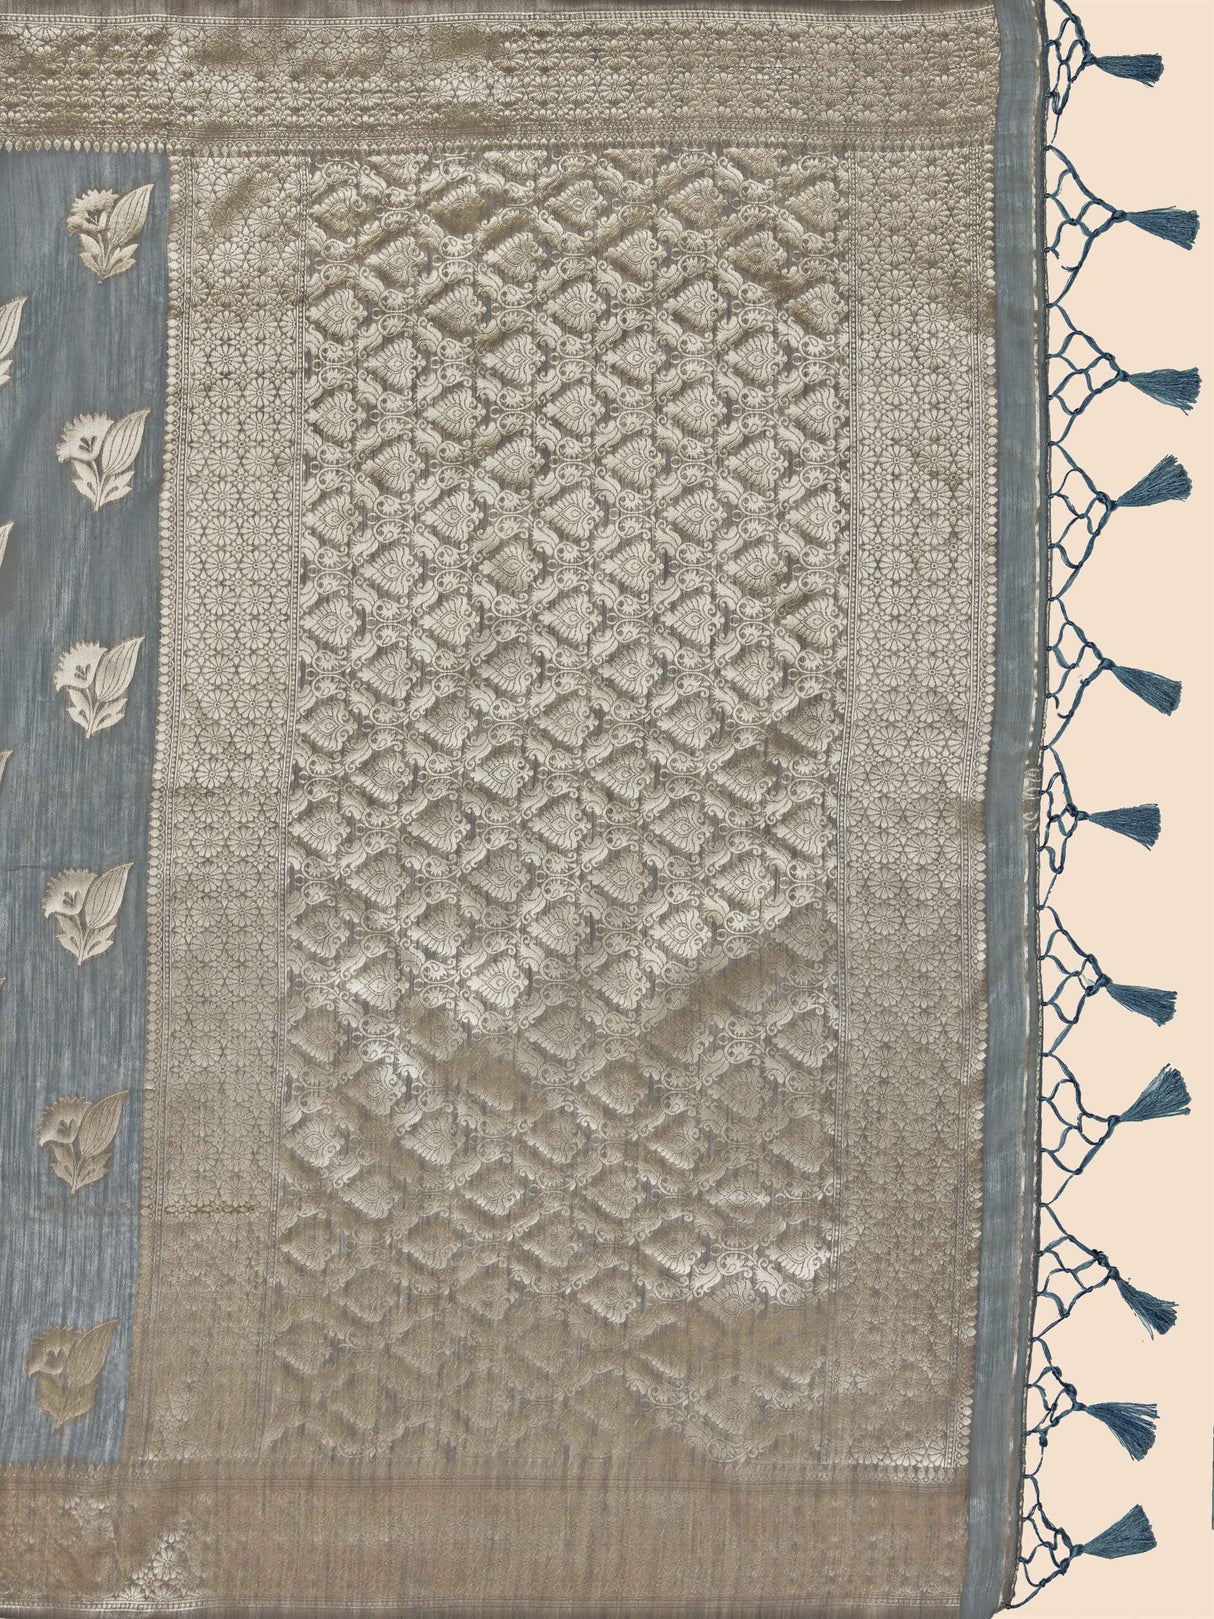 Mimosa Women's Woven Design Banarasi Poly Cotton Saree With Blouse Piece : SA00001060GY